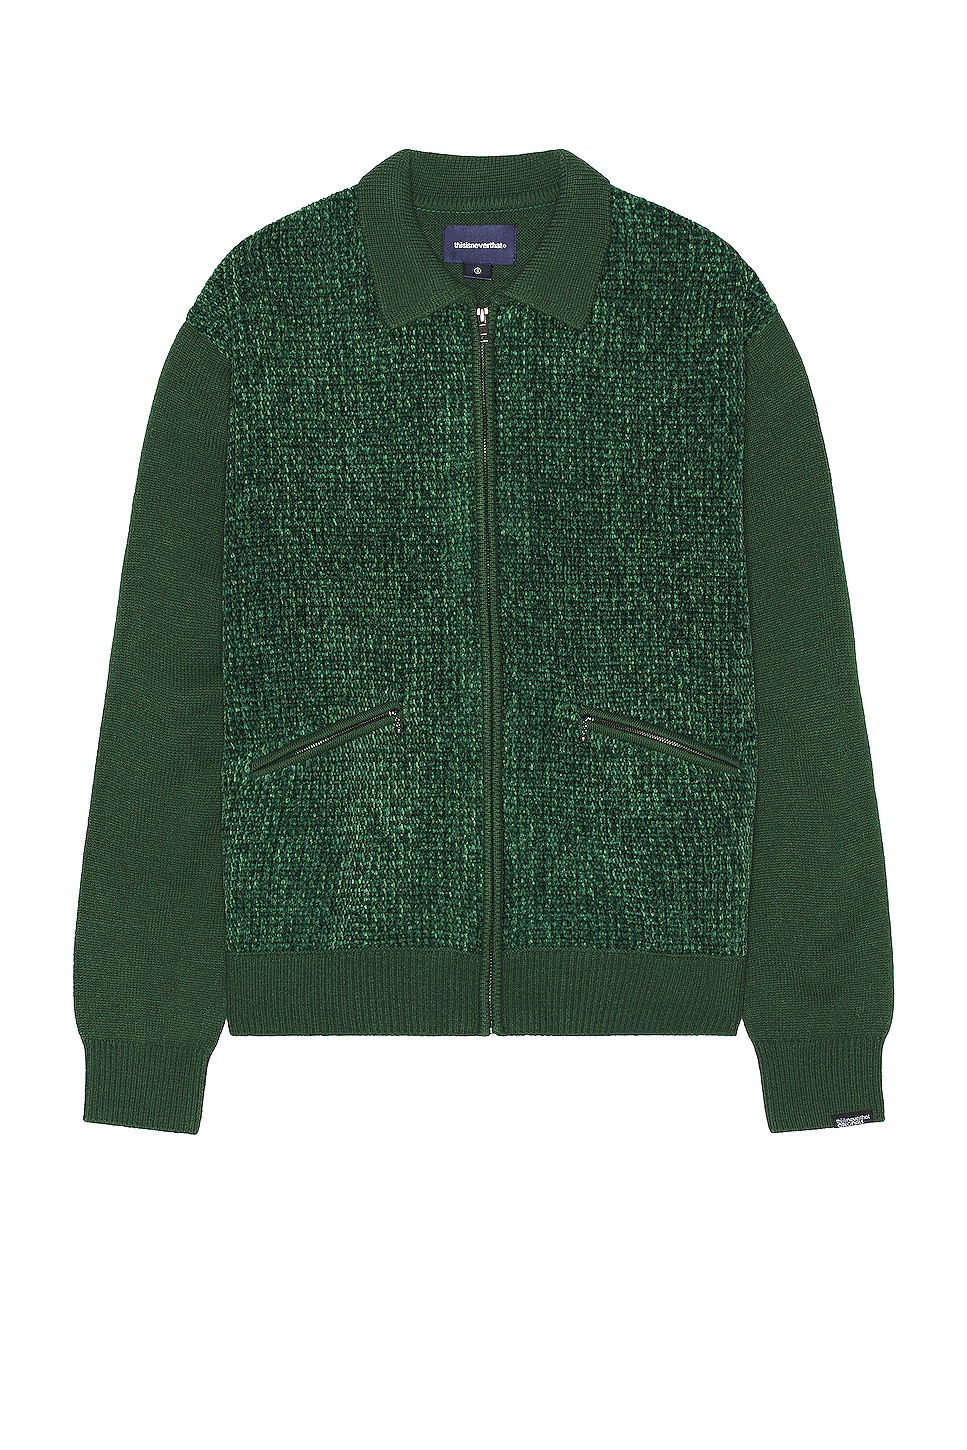 Рубашка Thisisneverthat Velvet Knit Zip Polo, зеленый рубашка thisisneverthat velvet knit zip polo зеленый